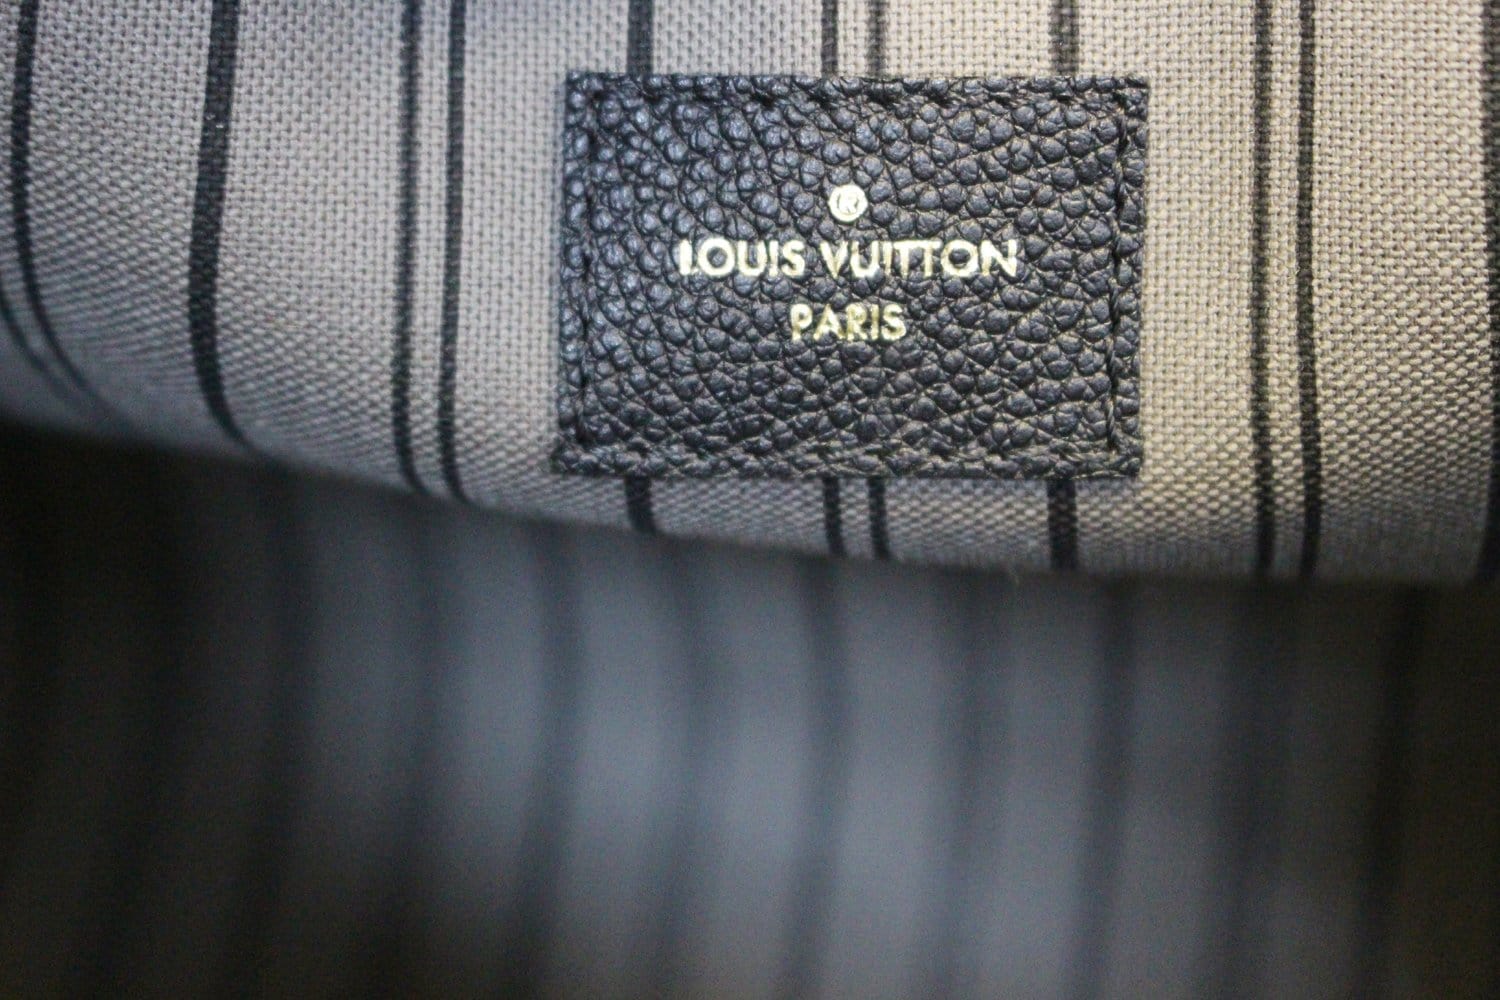 Louis Vuitton Montaigne MM in Monogram Empreinte Noir - SOLD